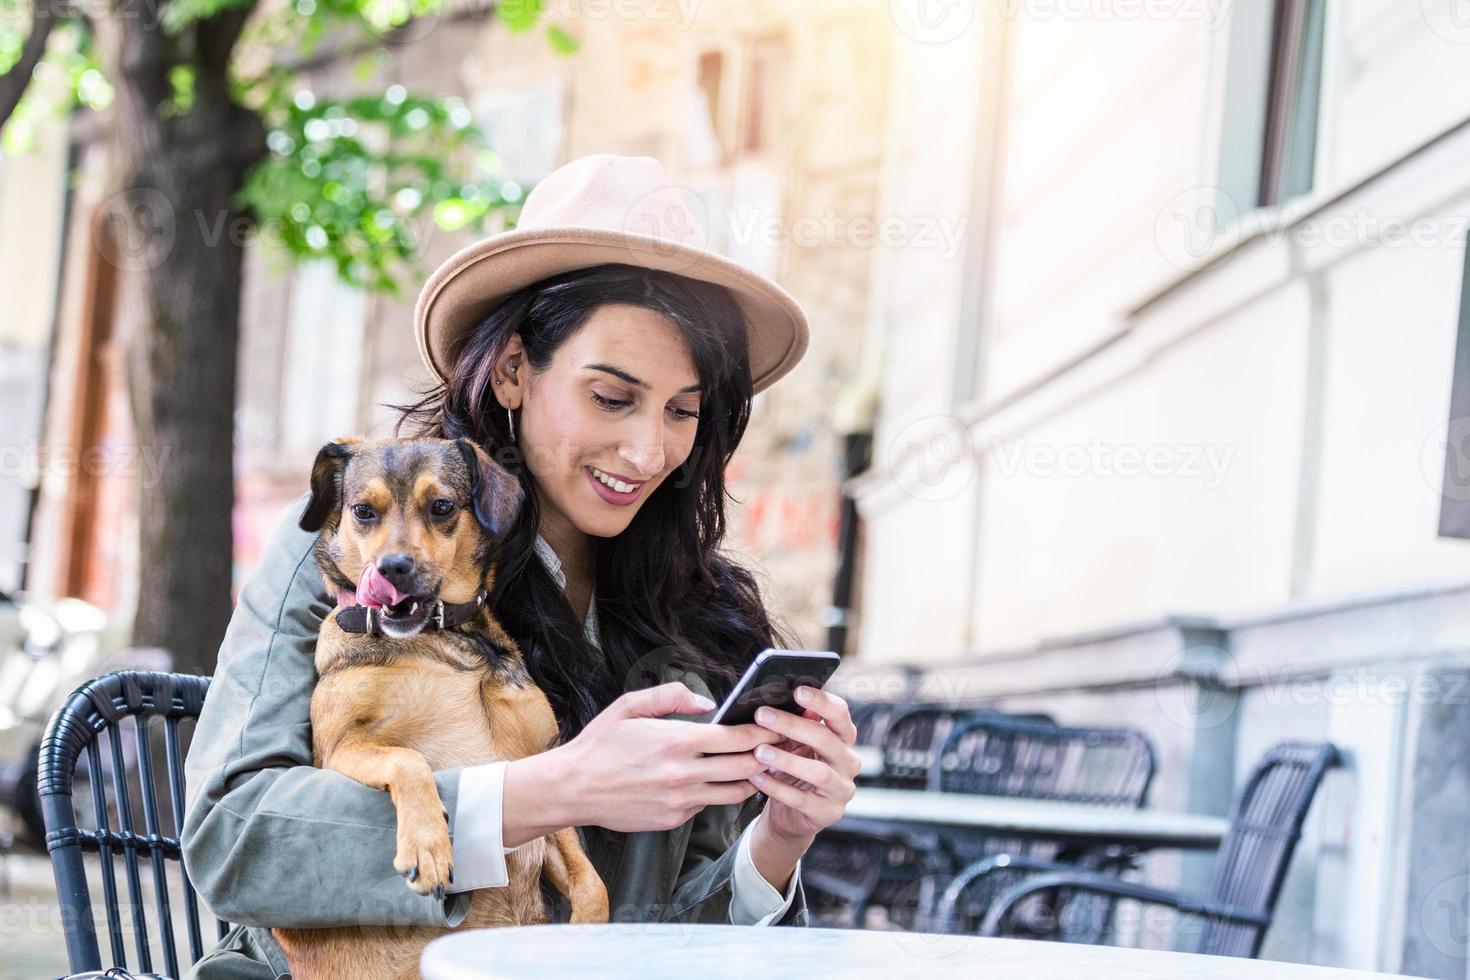 jeune femme avec son chien dans une cafétéria acceptant les animaux. jeune femme envoyant des SMS sur son téléphone portable tout en se relaxant au café pendant son temps libre avec son chien photo